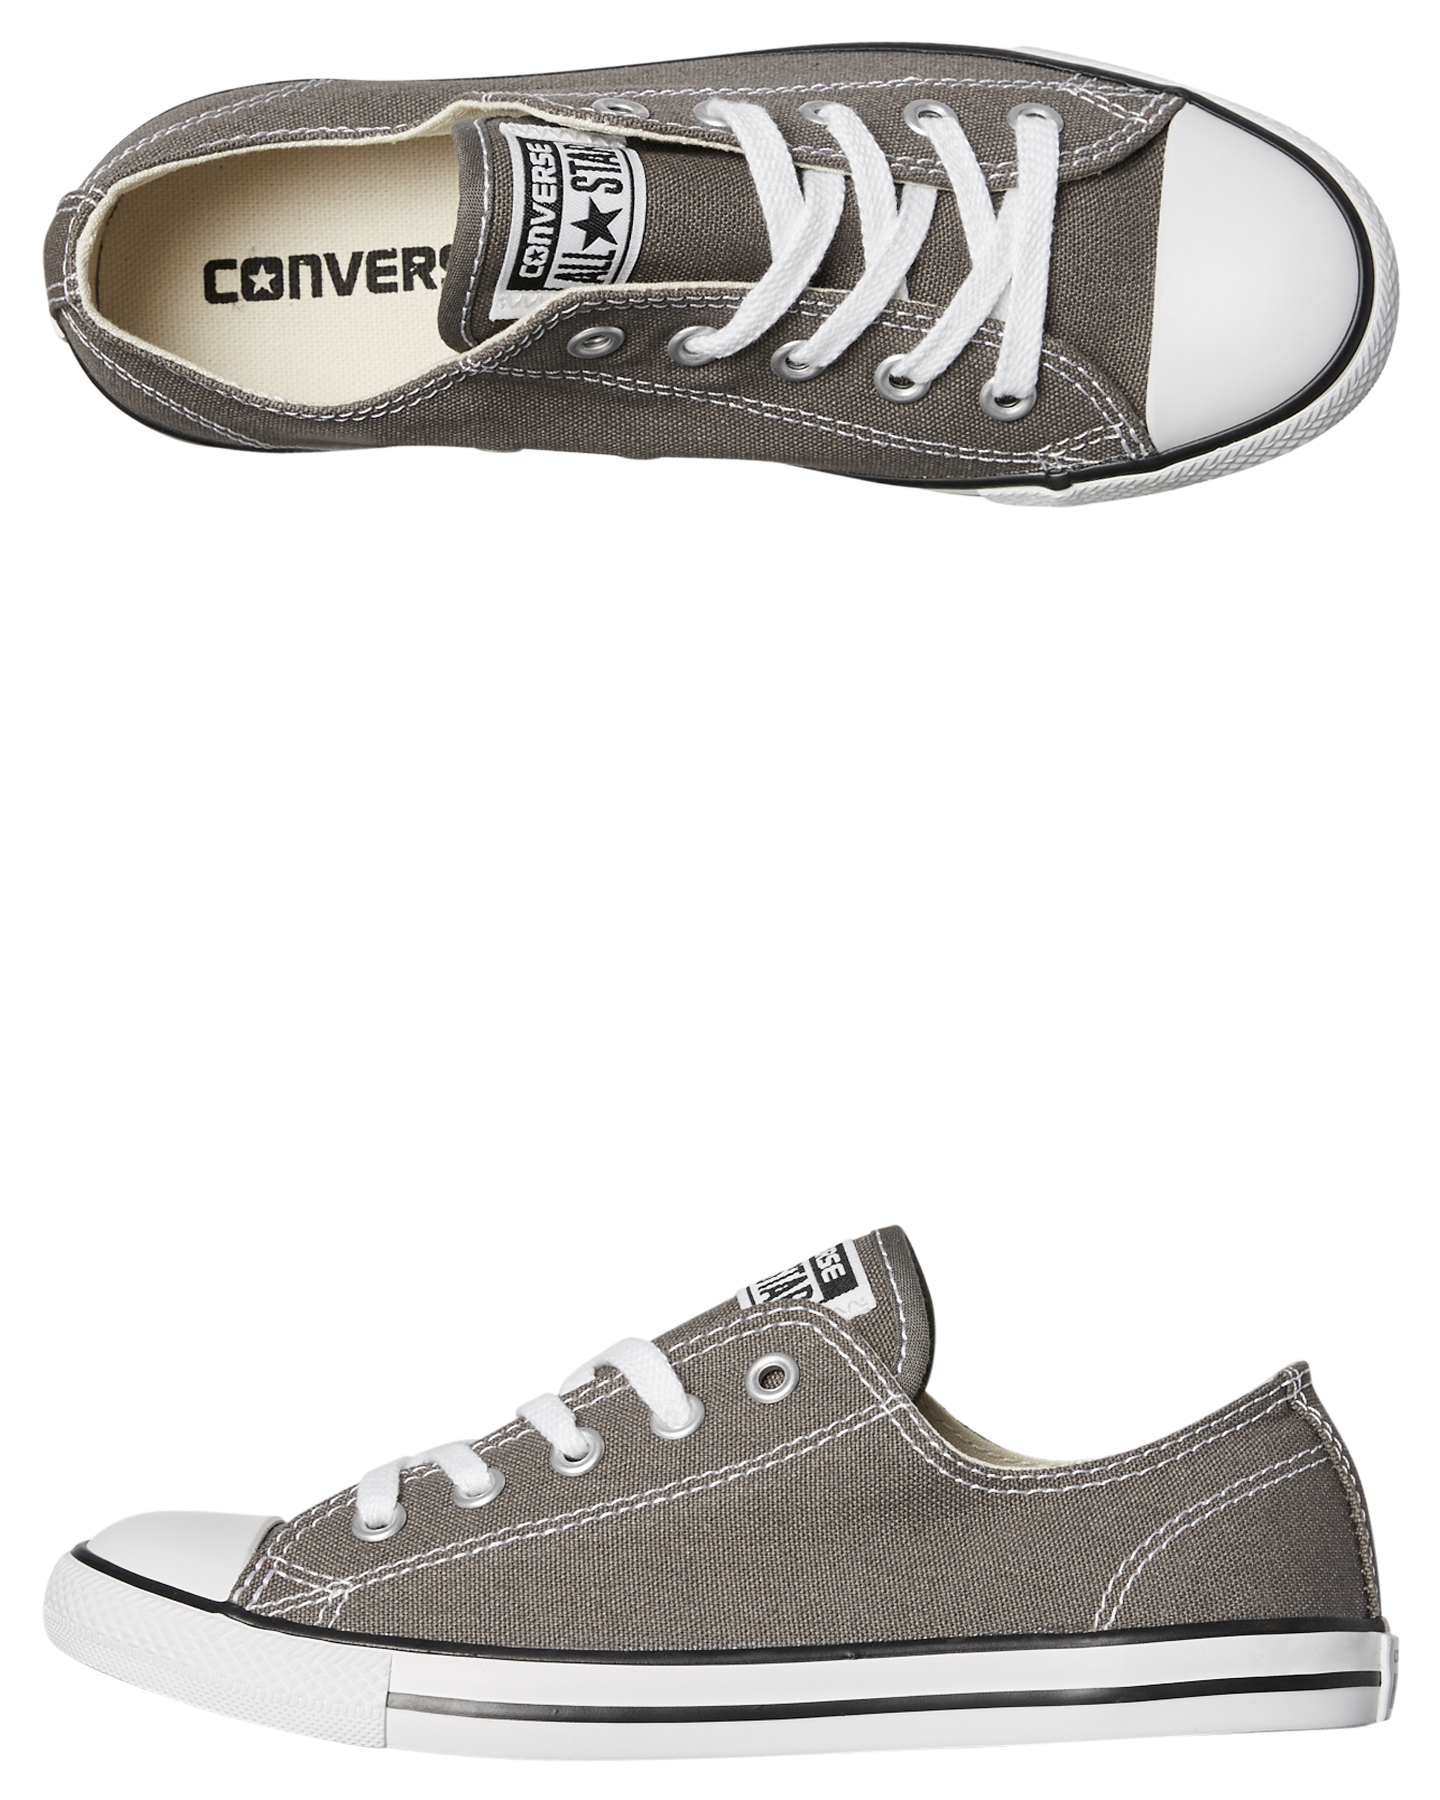 converse shoes size 4